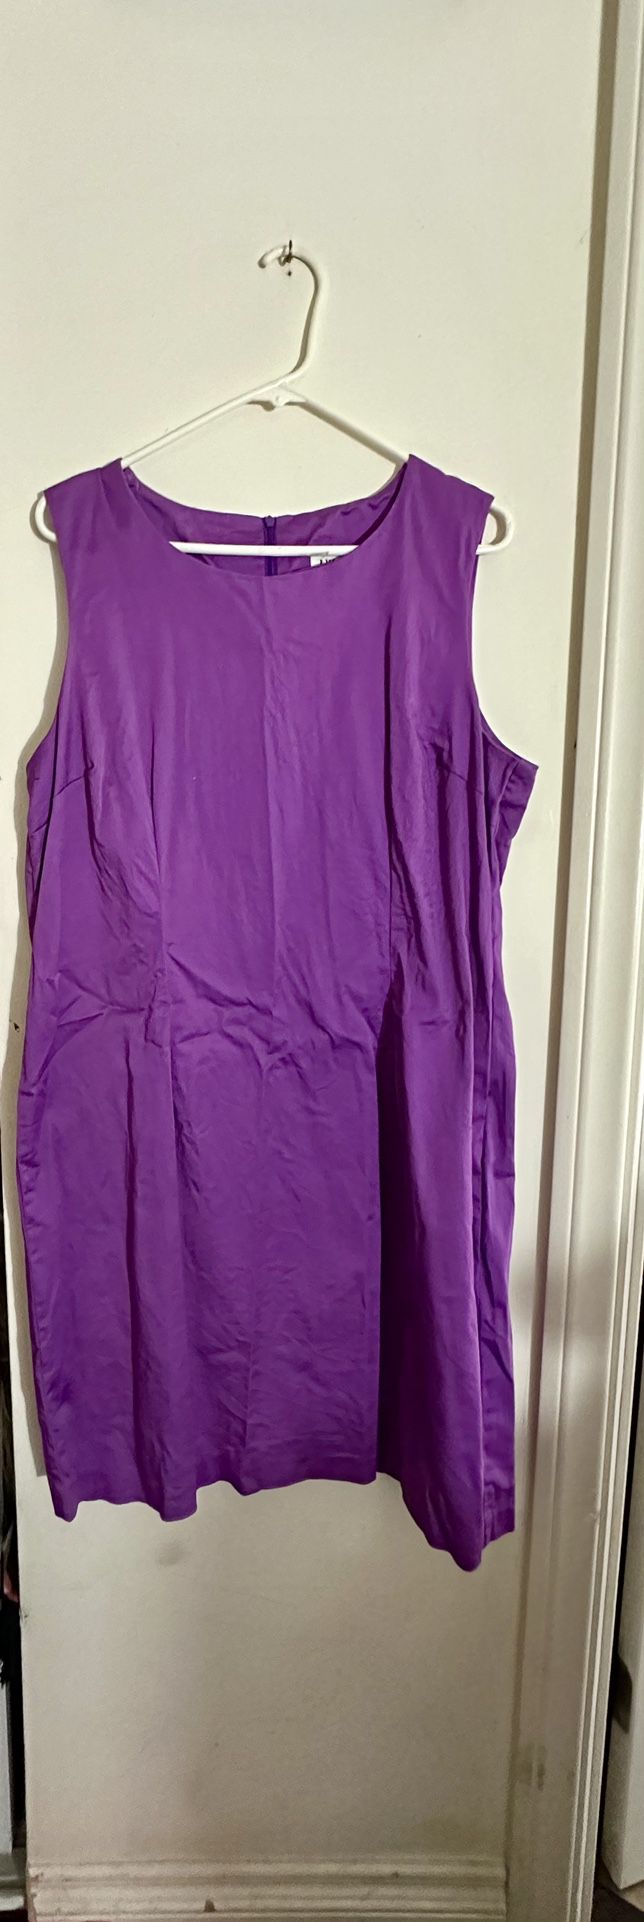 New JW Treci Lilac Purple Dress size 18